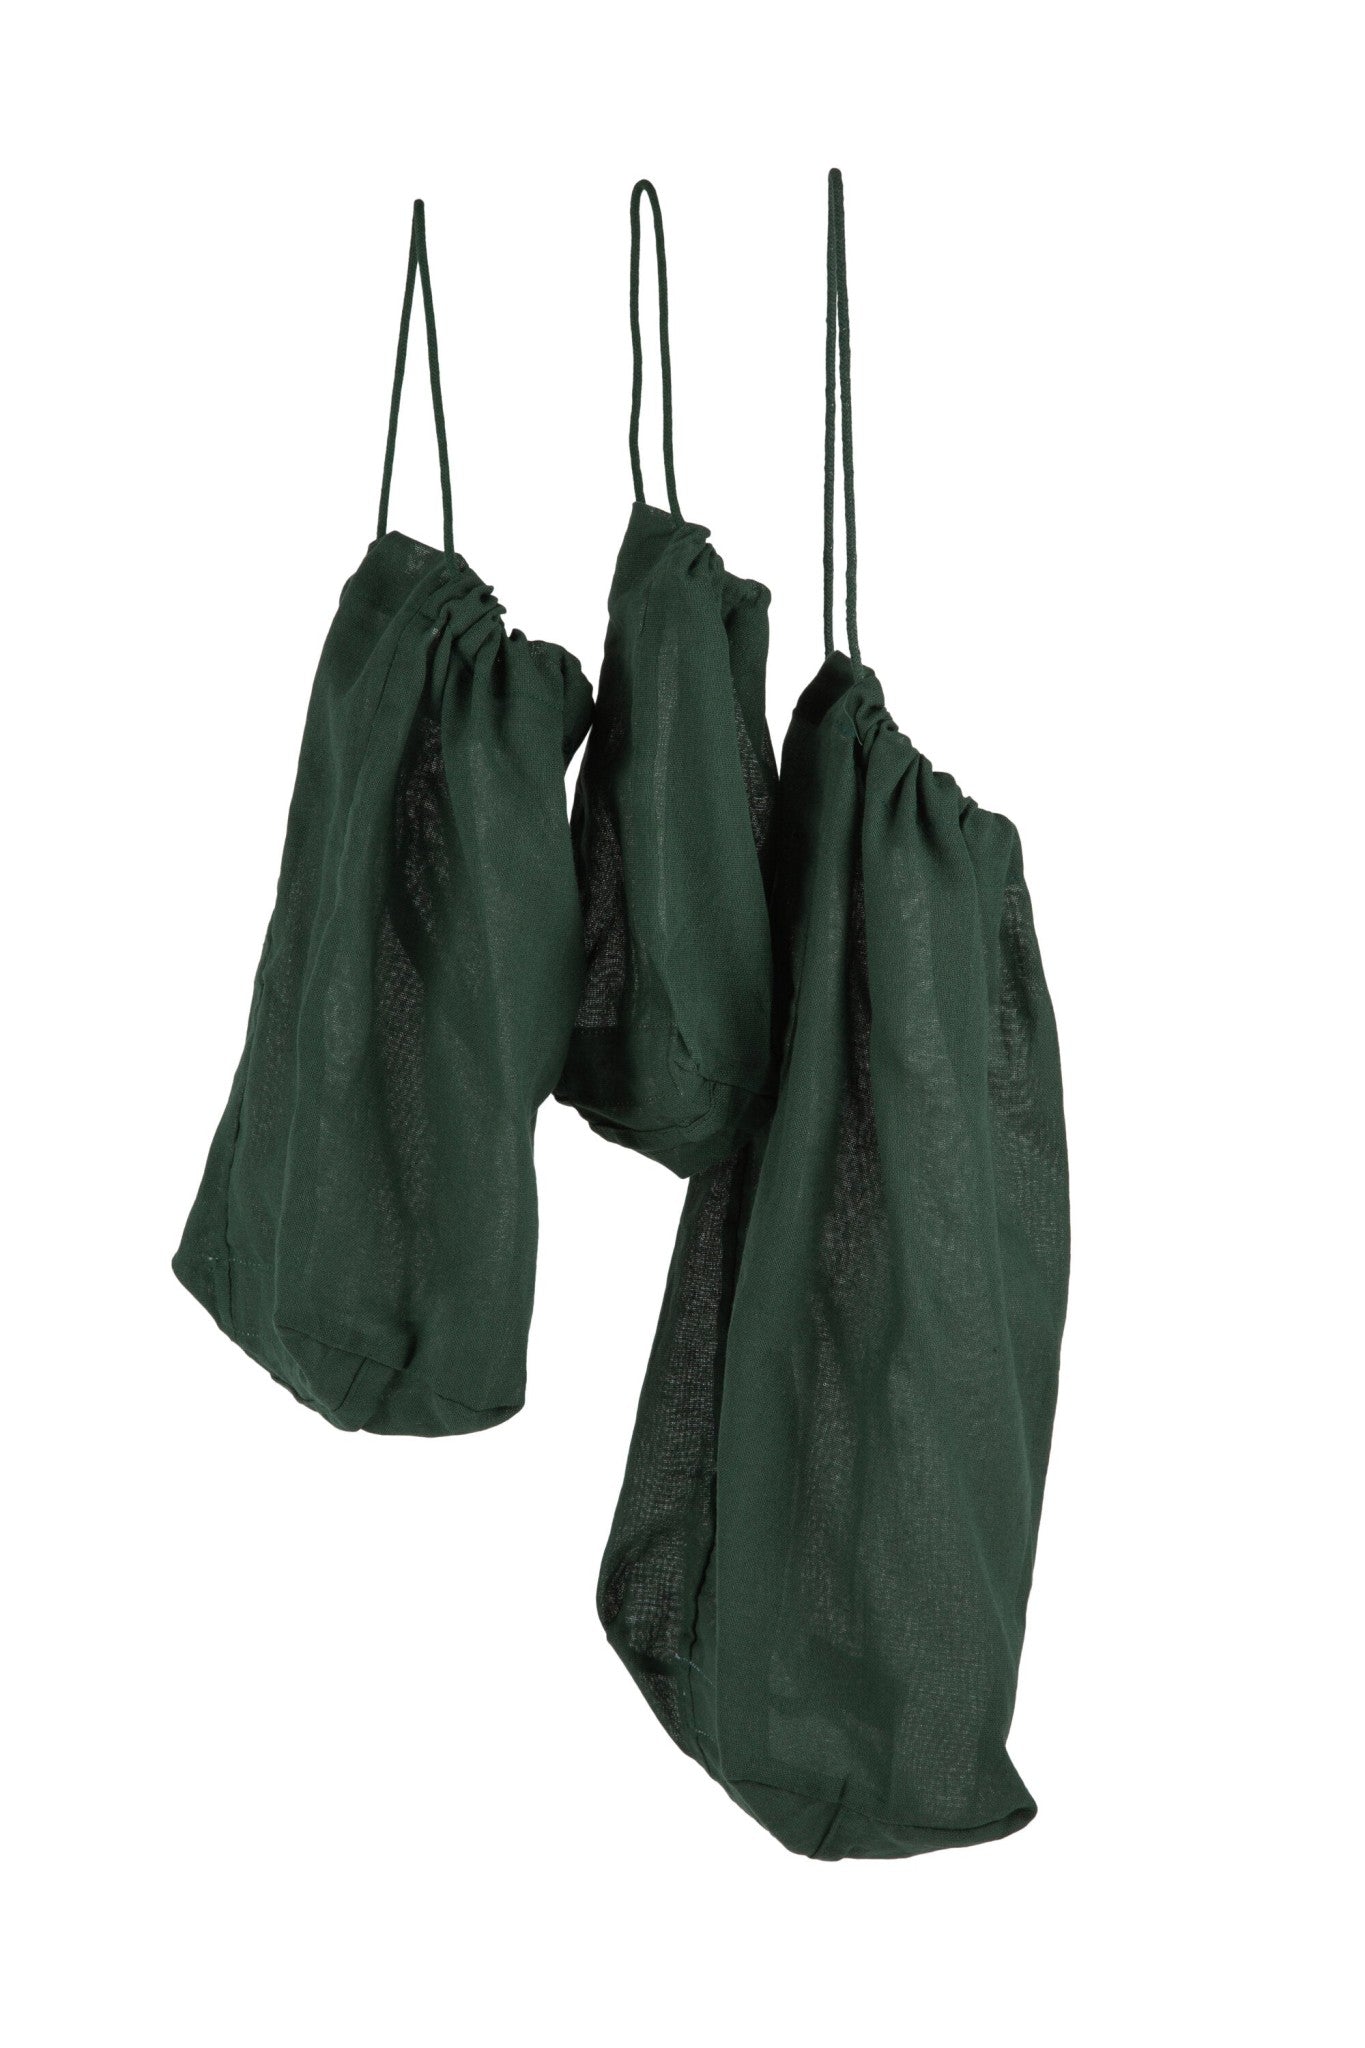 Det organiske firma madpose sæt, mørkegrøn